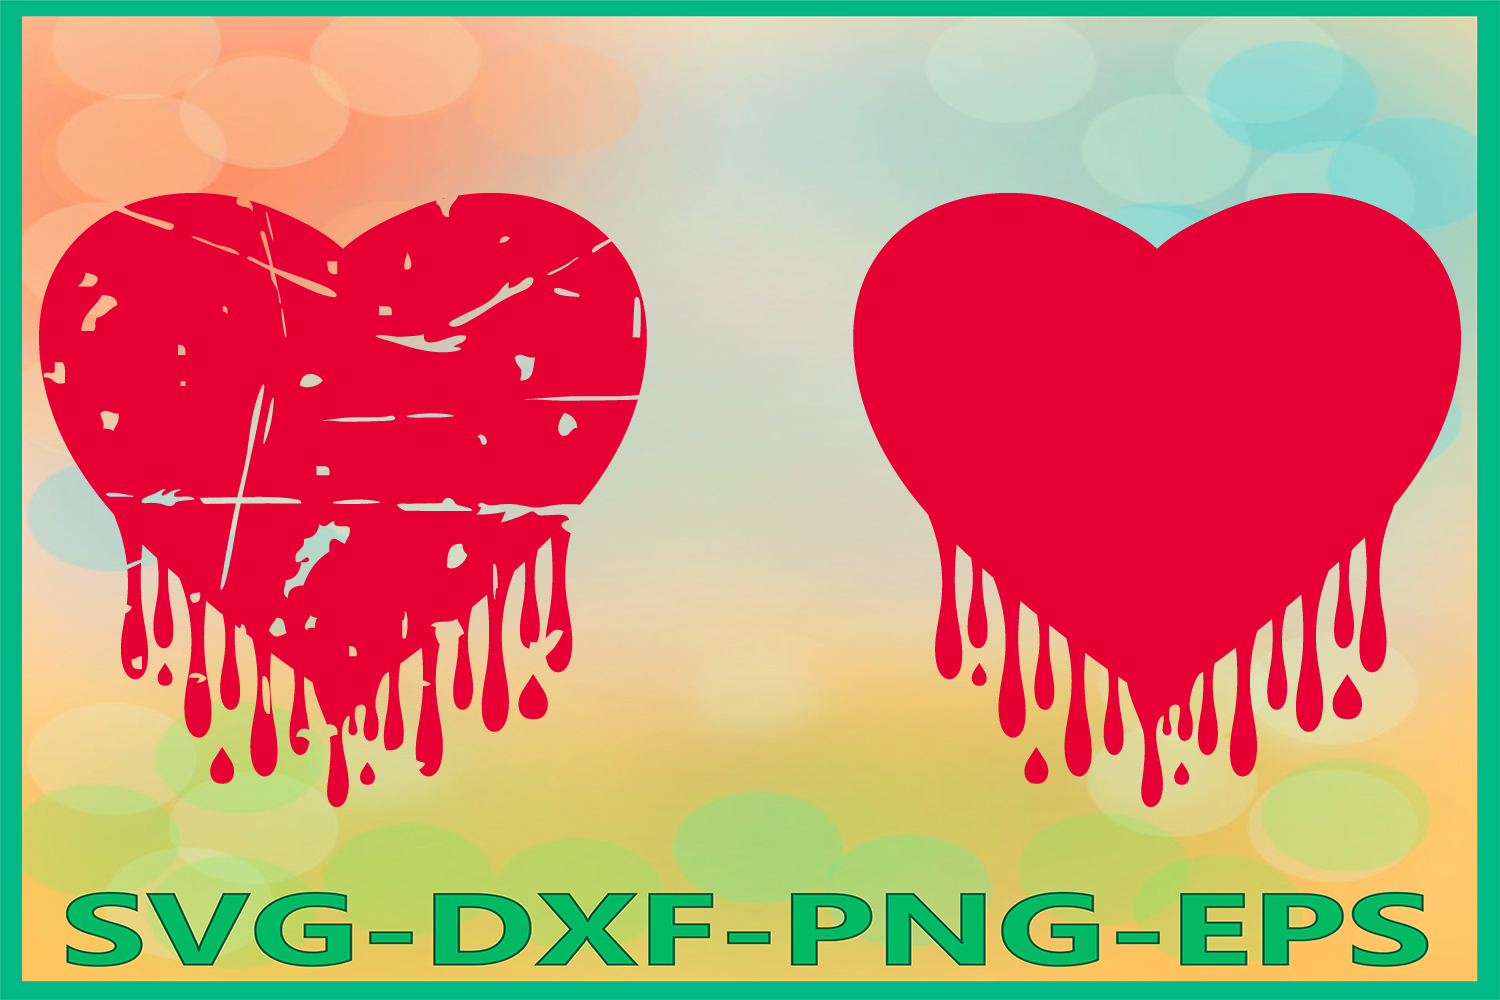 Bleeding Heart Grunge svg, Heart SVG, Dripping Hearts